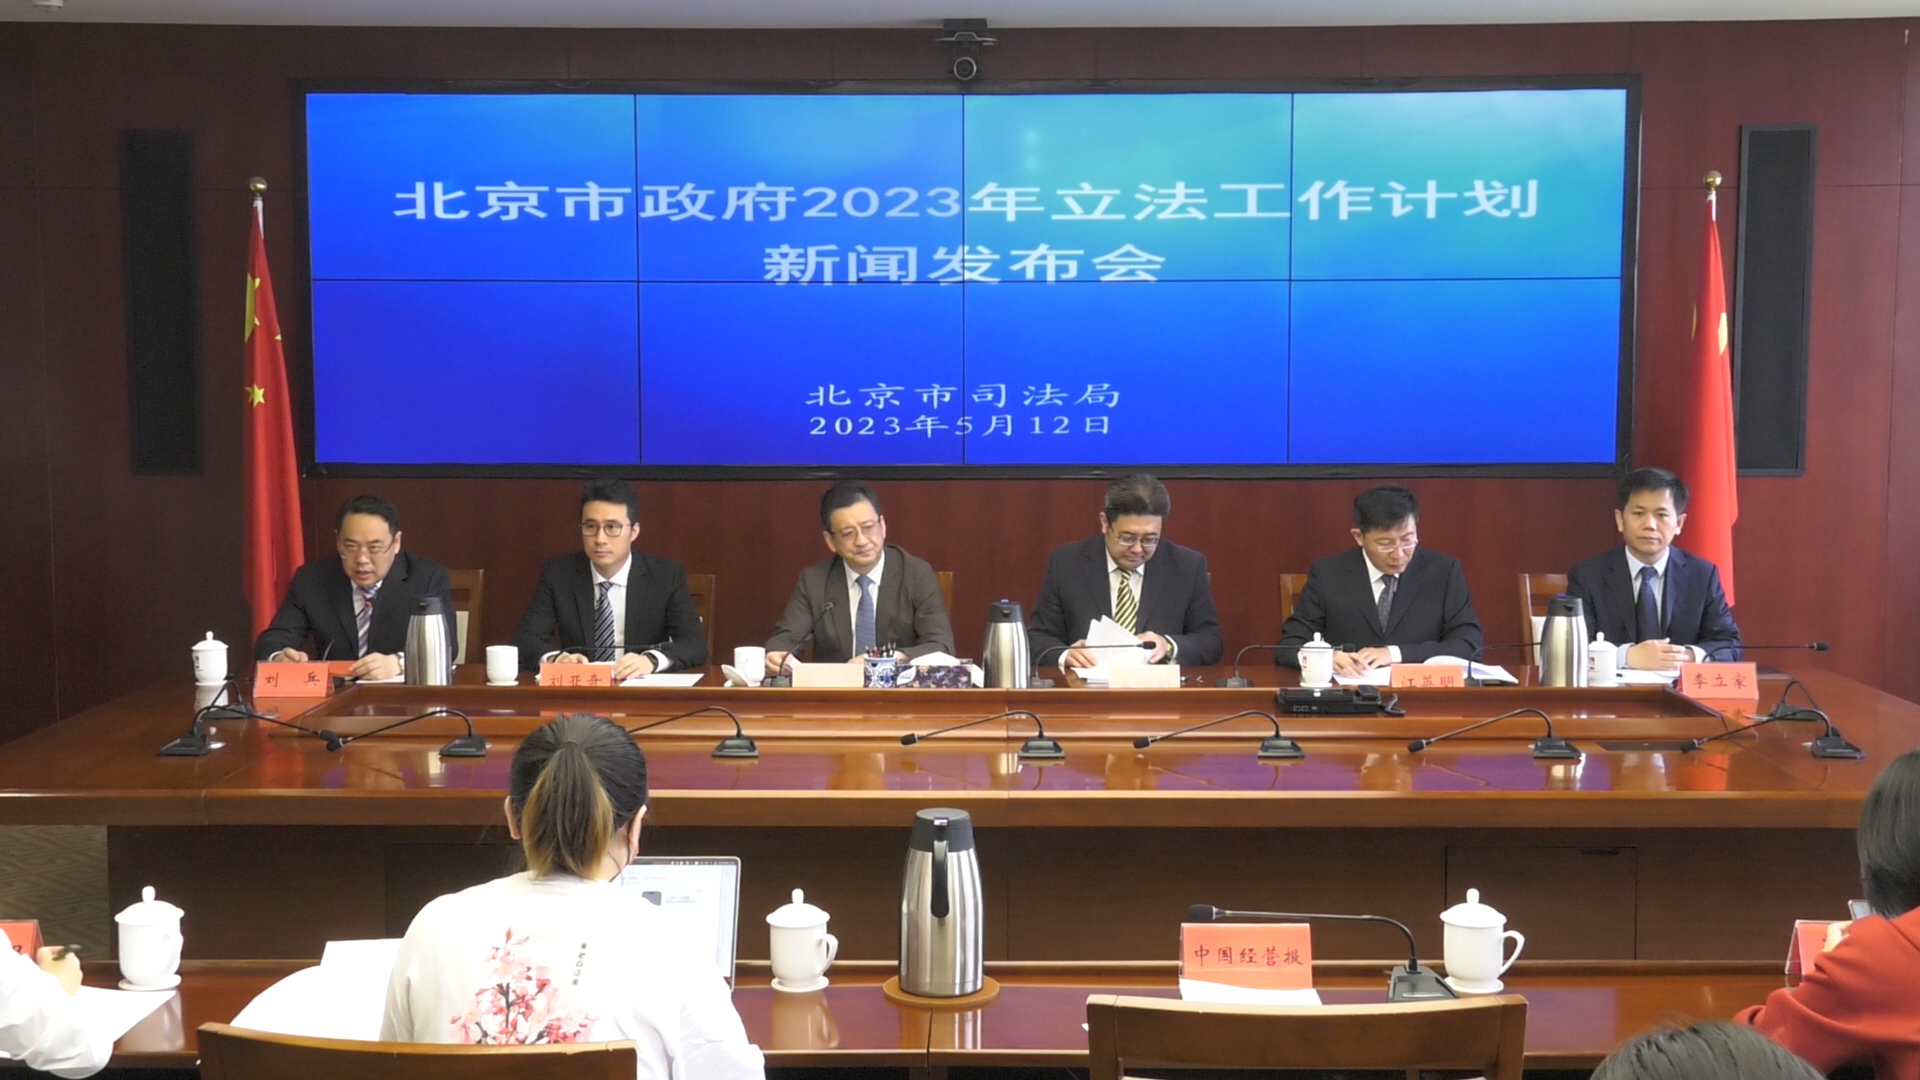 [直击一线]北京市政府2023年计划安排立法34项